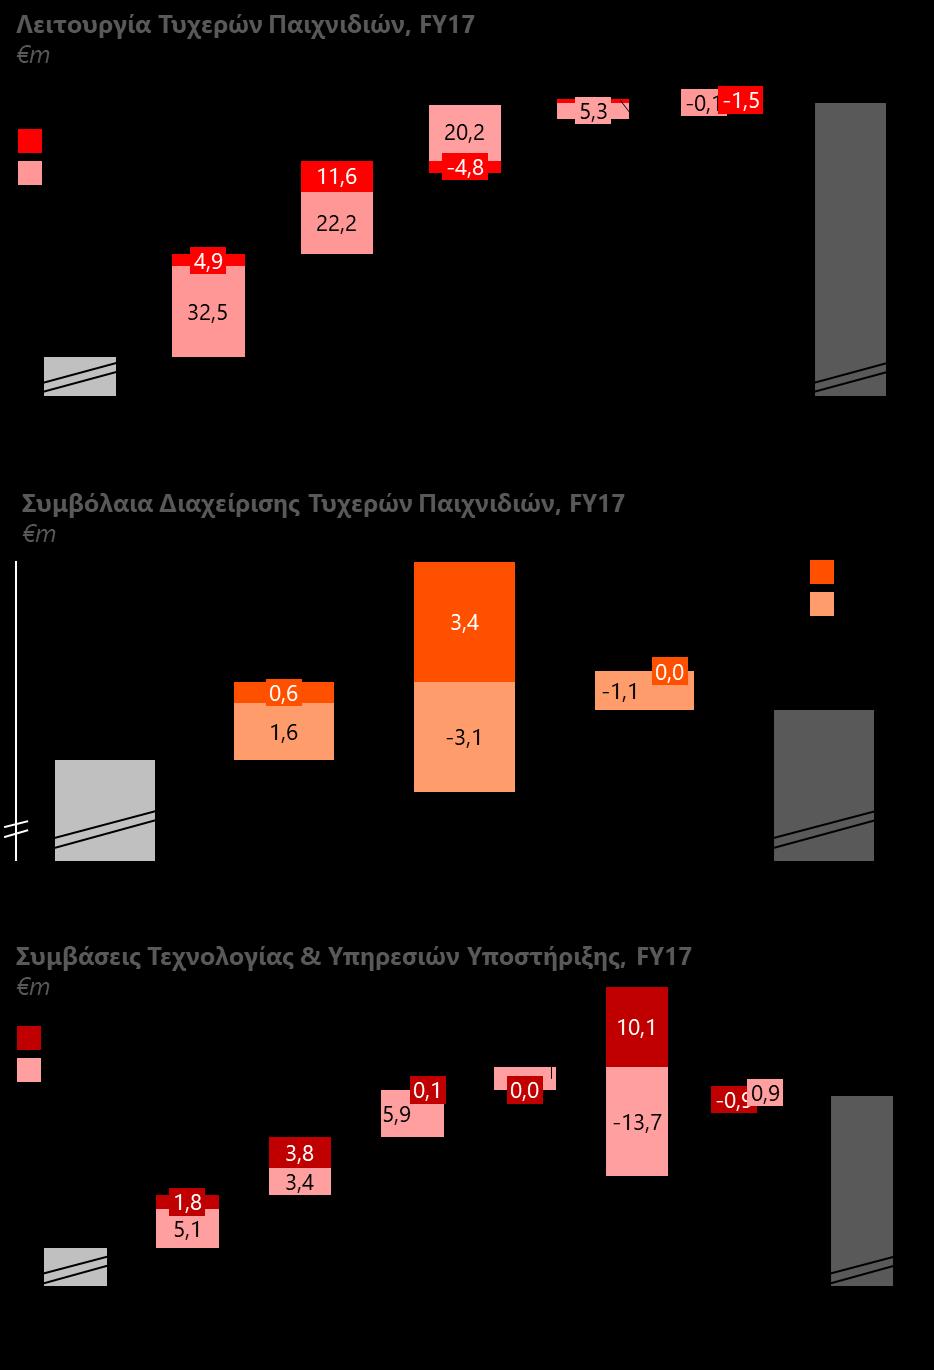 προσανατολισμό στο δίκτυο της λιανικής, μερικώς μειωμένα από την χαμηλότερη επίδοση στα Αριθμοπαιχνίδια και στις Ιπποδρομίες, στην Πολωνία ( +33,8 εκατ.